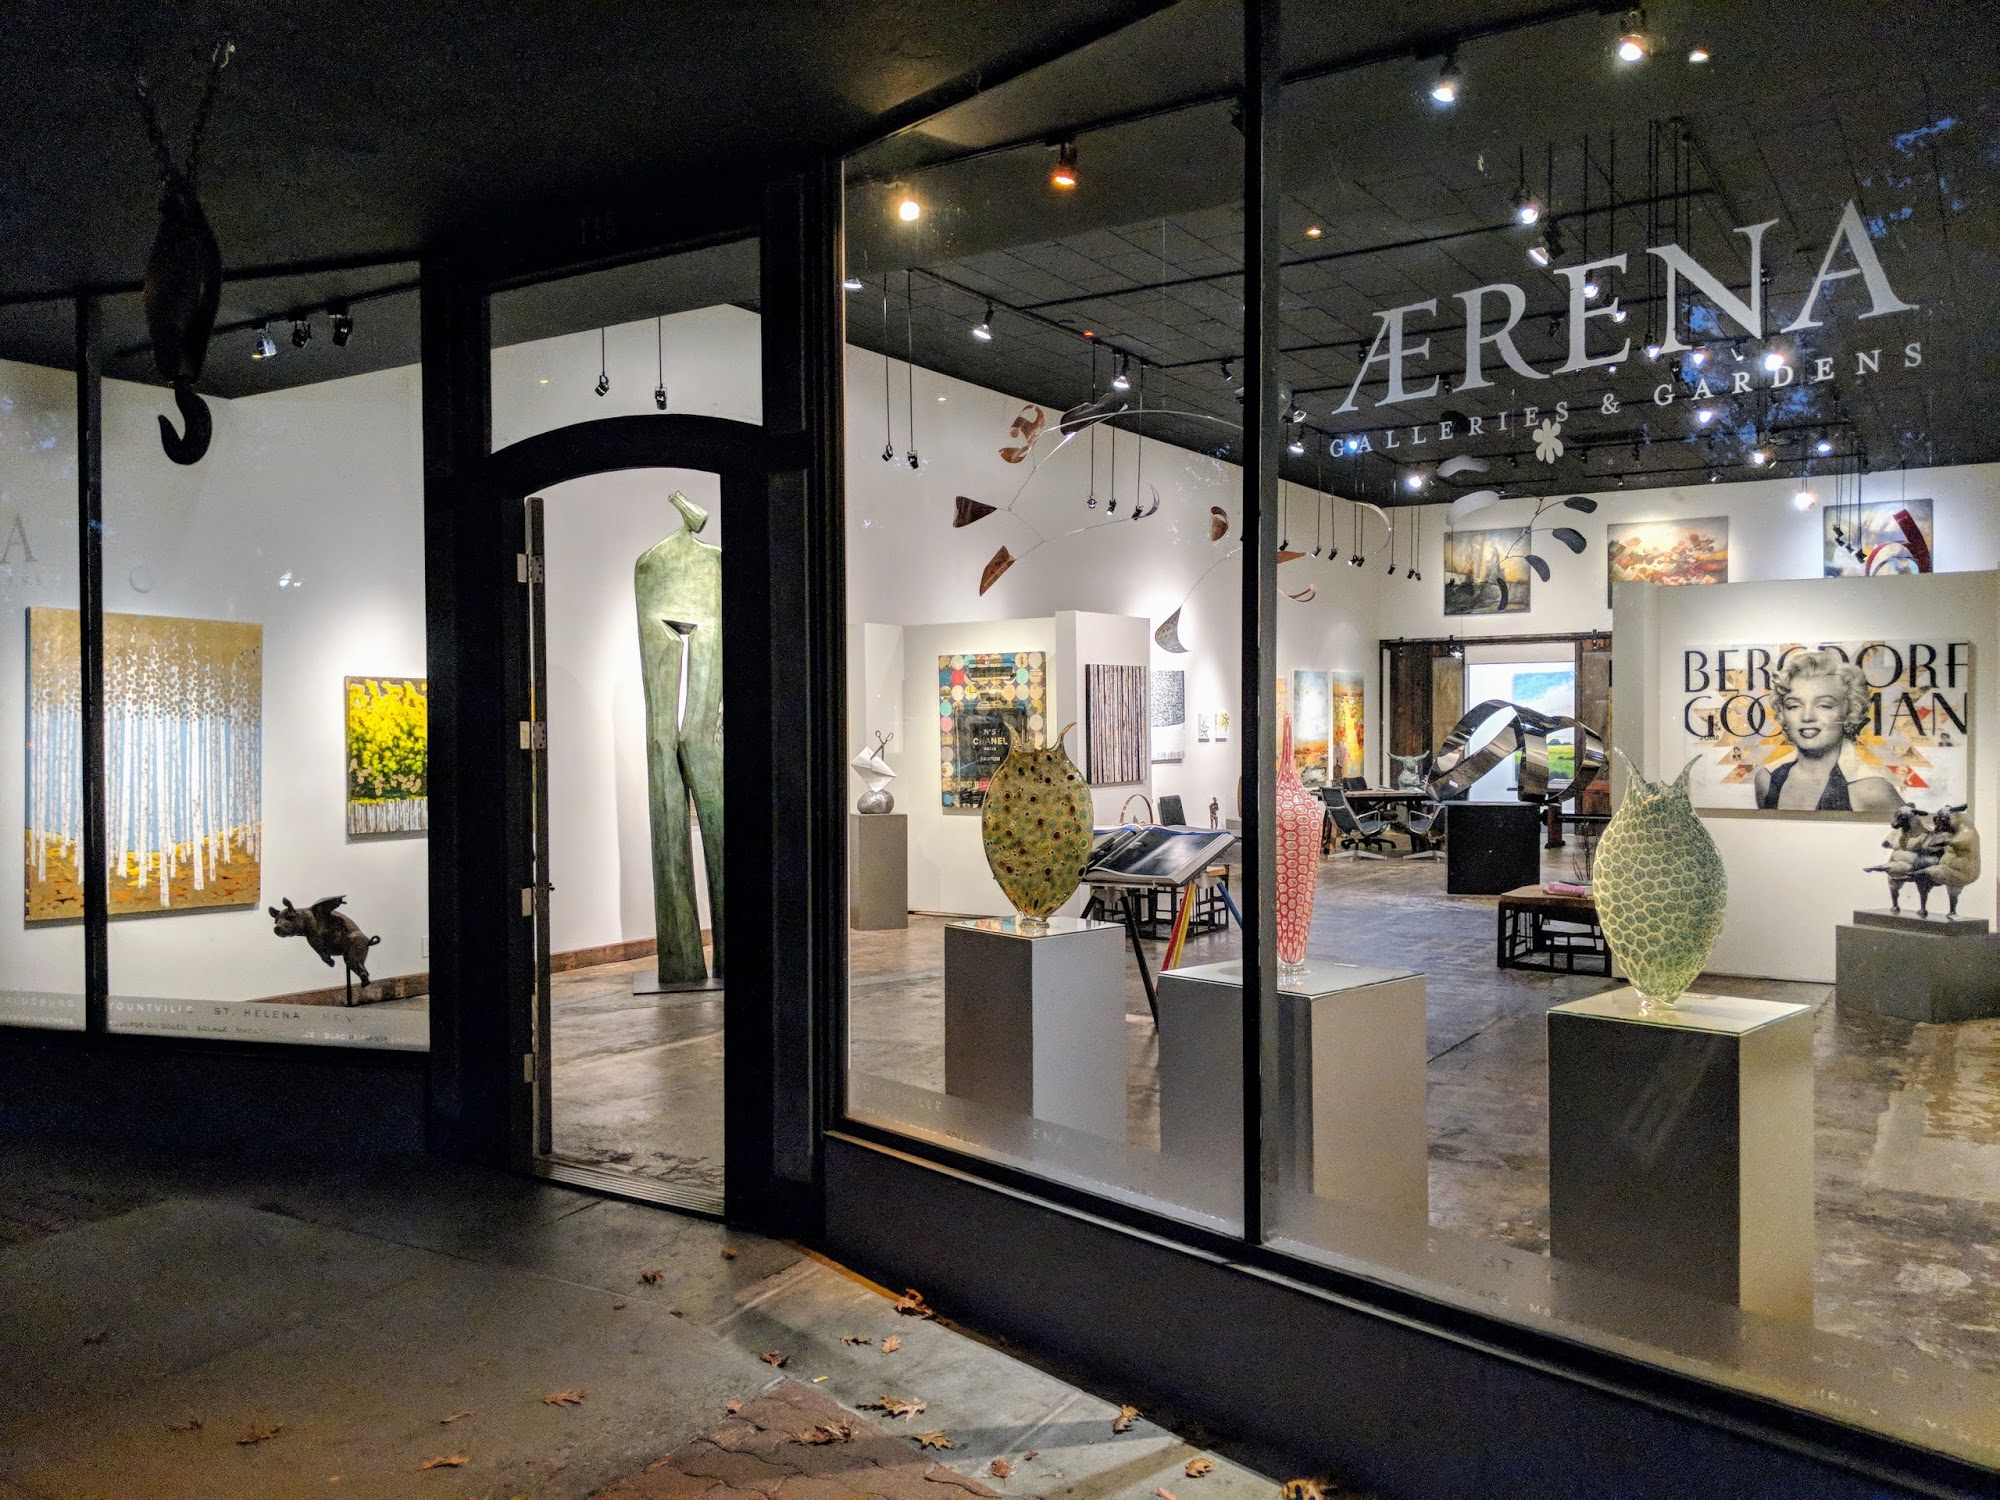 AERENA Galleries & Gardens